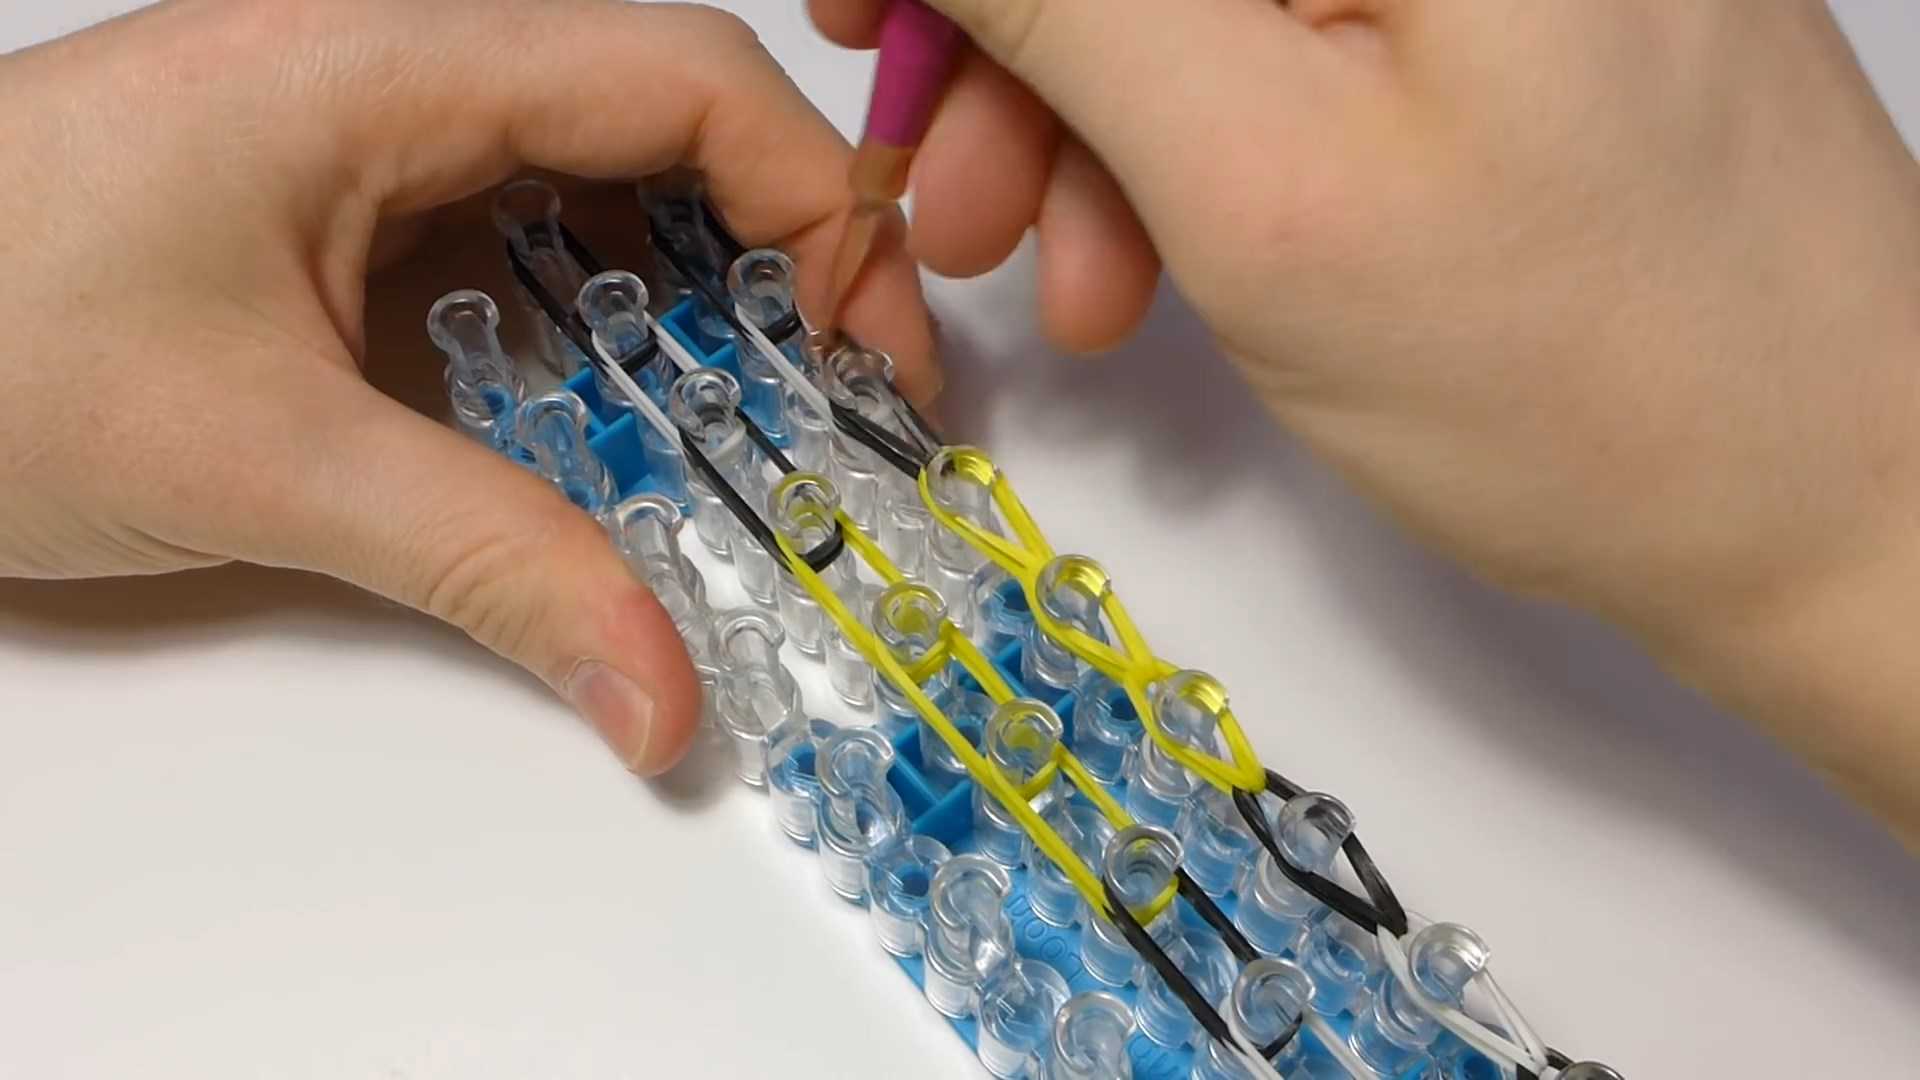 Плетение из резинок для начинающих (108 фото): идеи плетения фигурок на рогатке, станке, крючке, пальцах